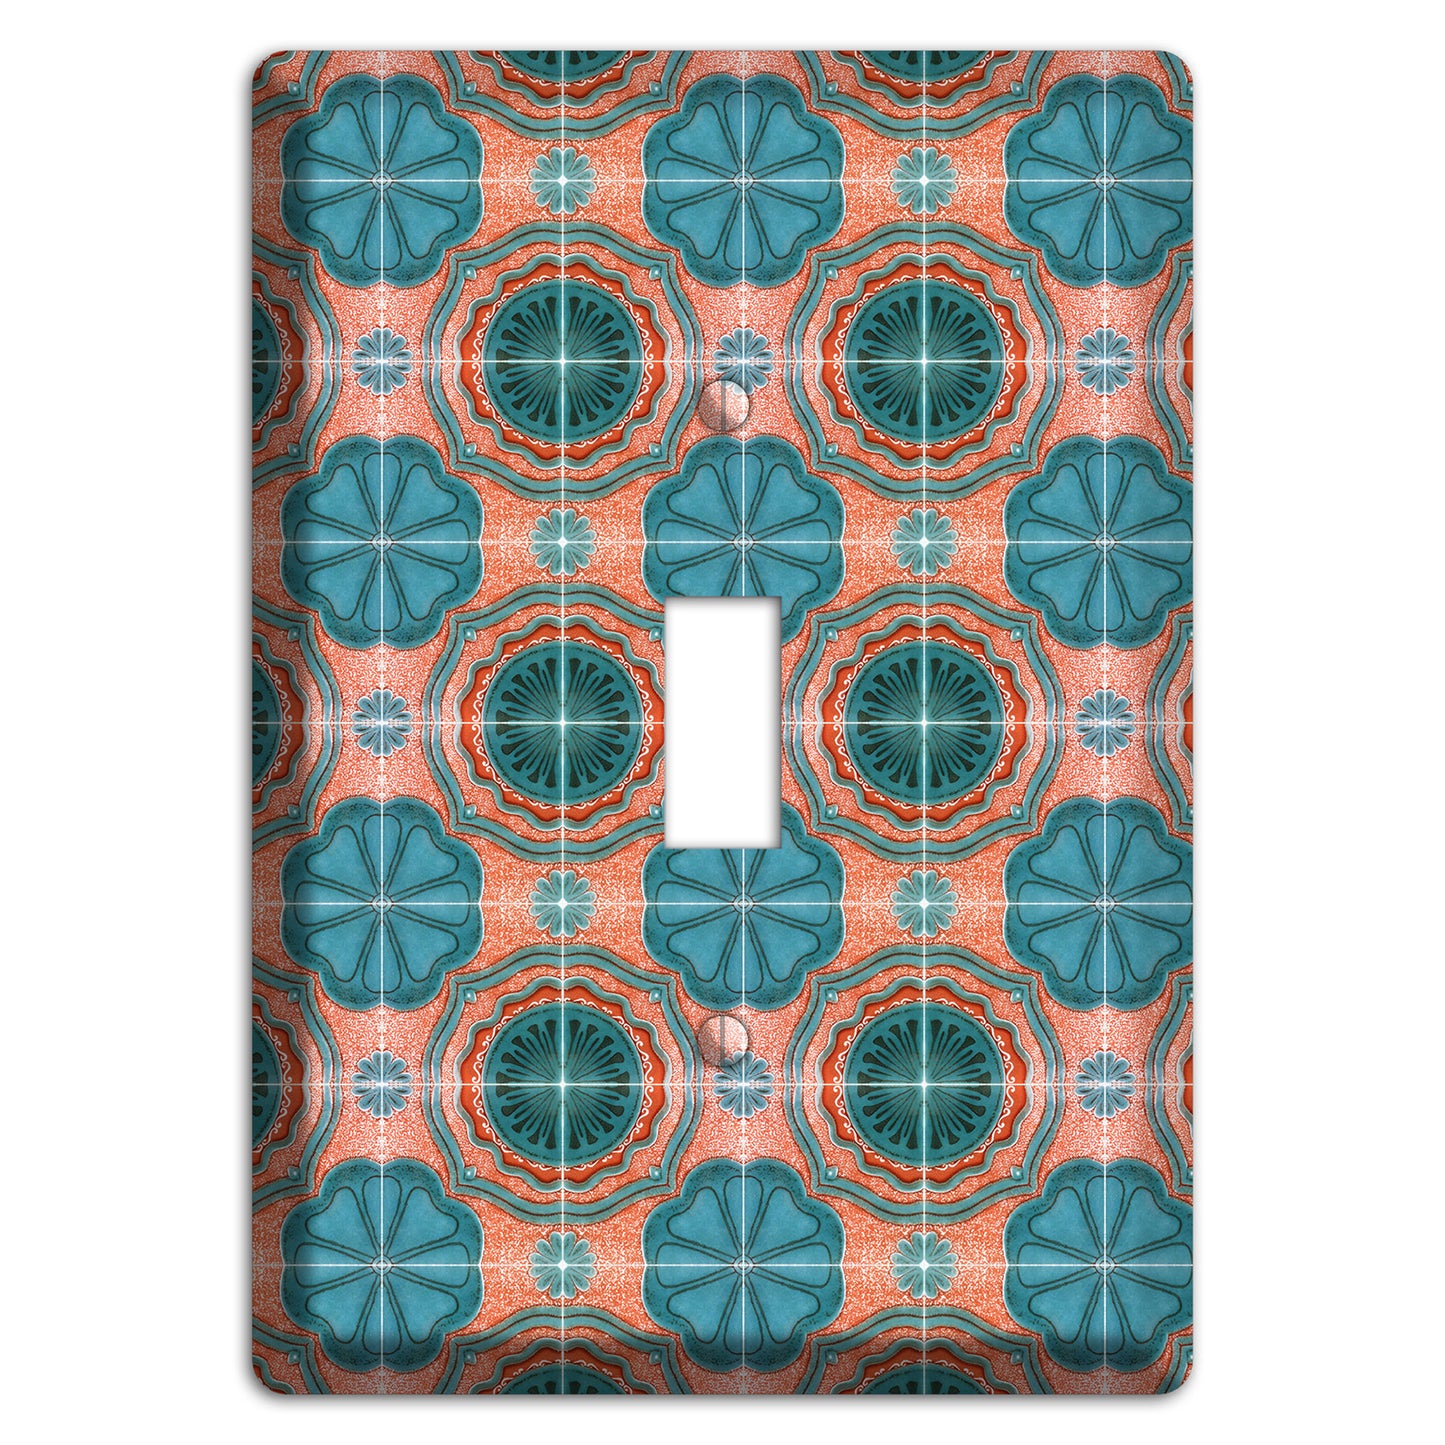 Tavira Tiles 3 Cover Plates